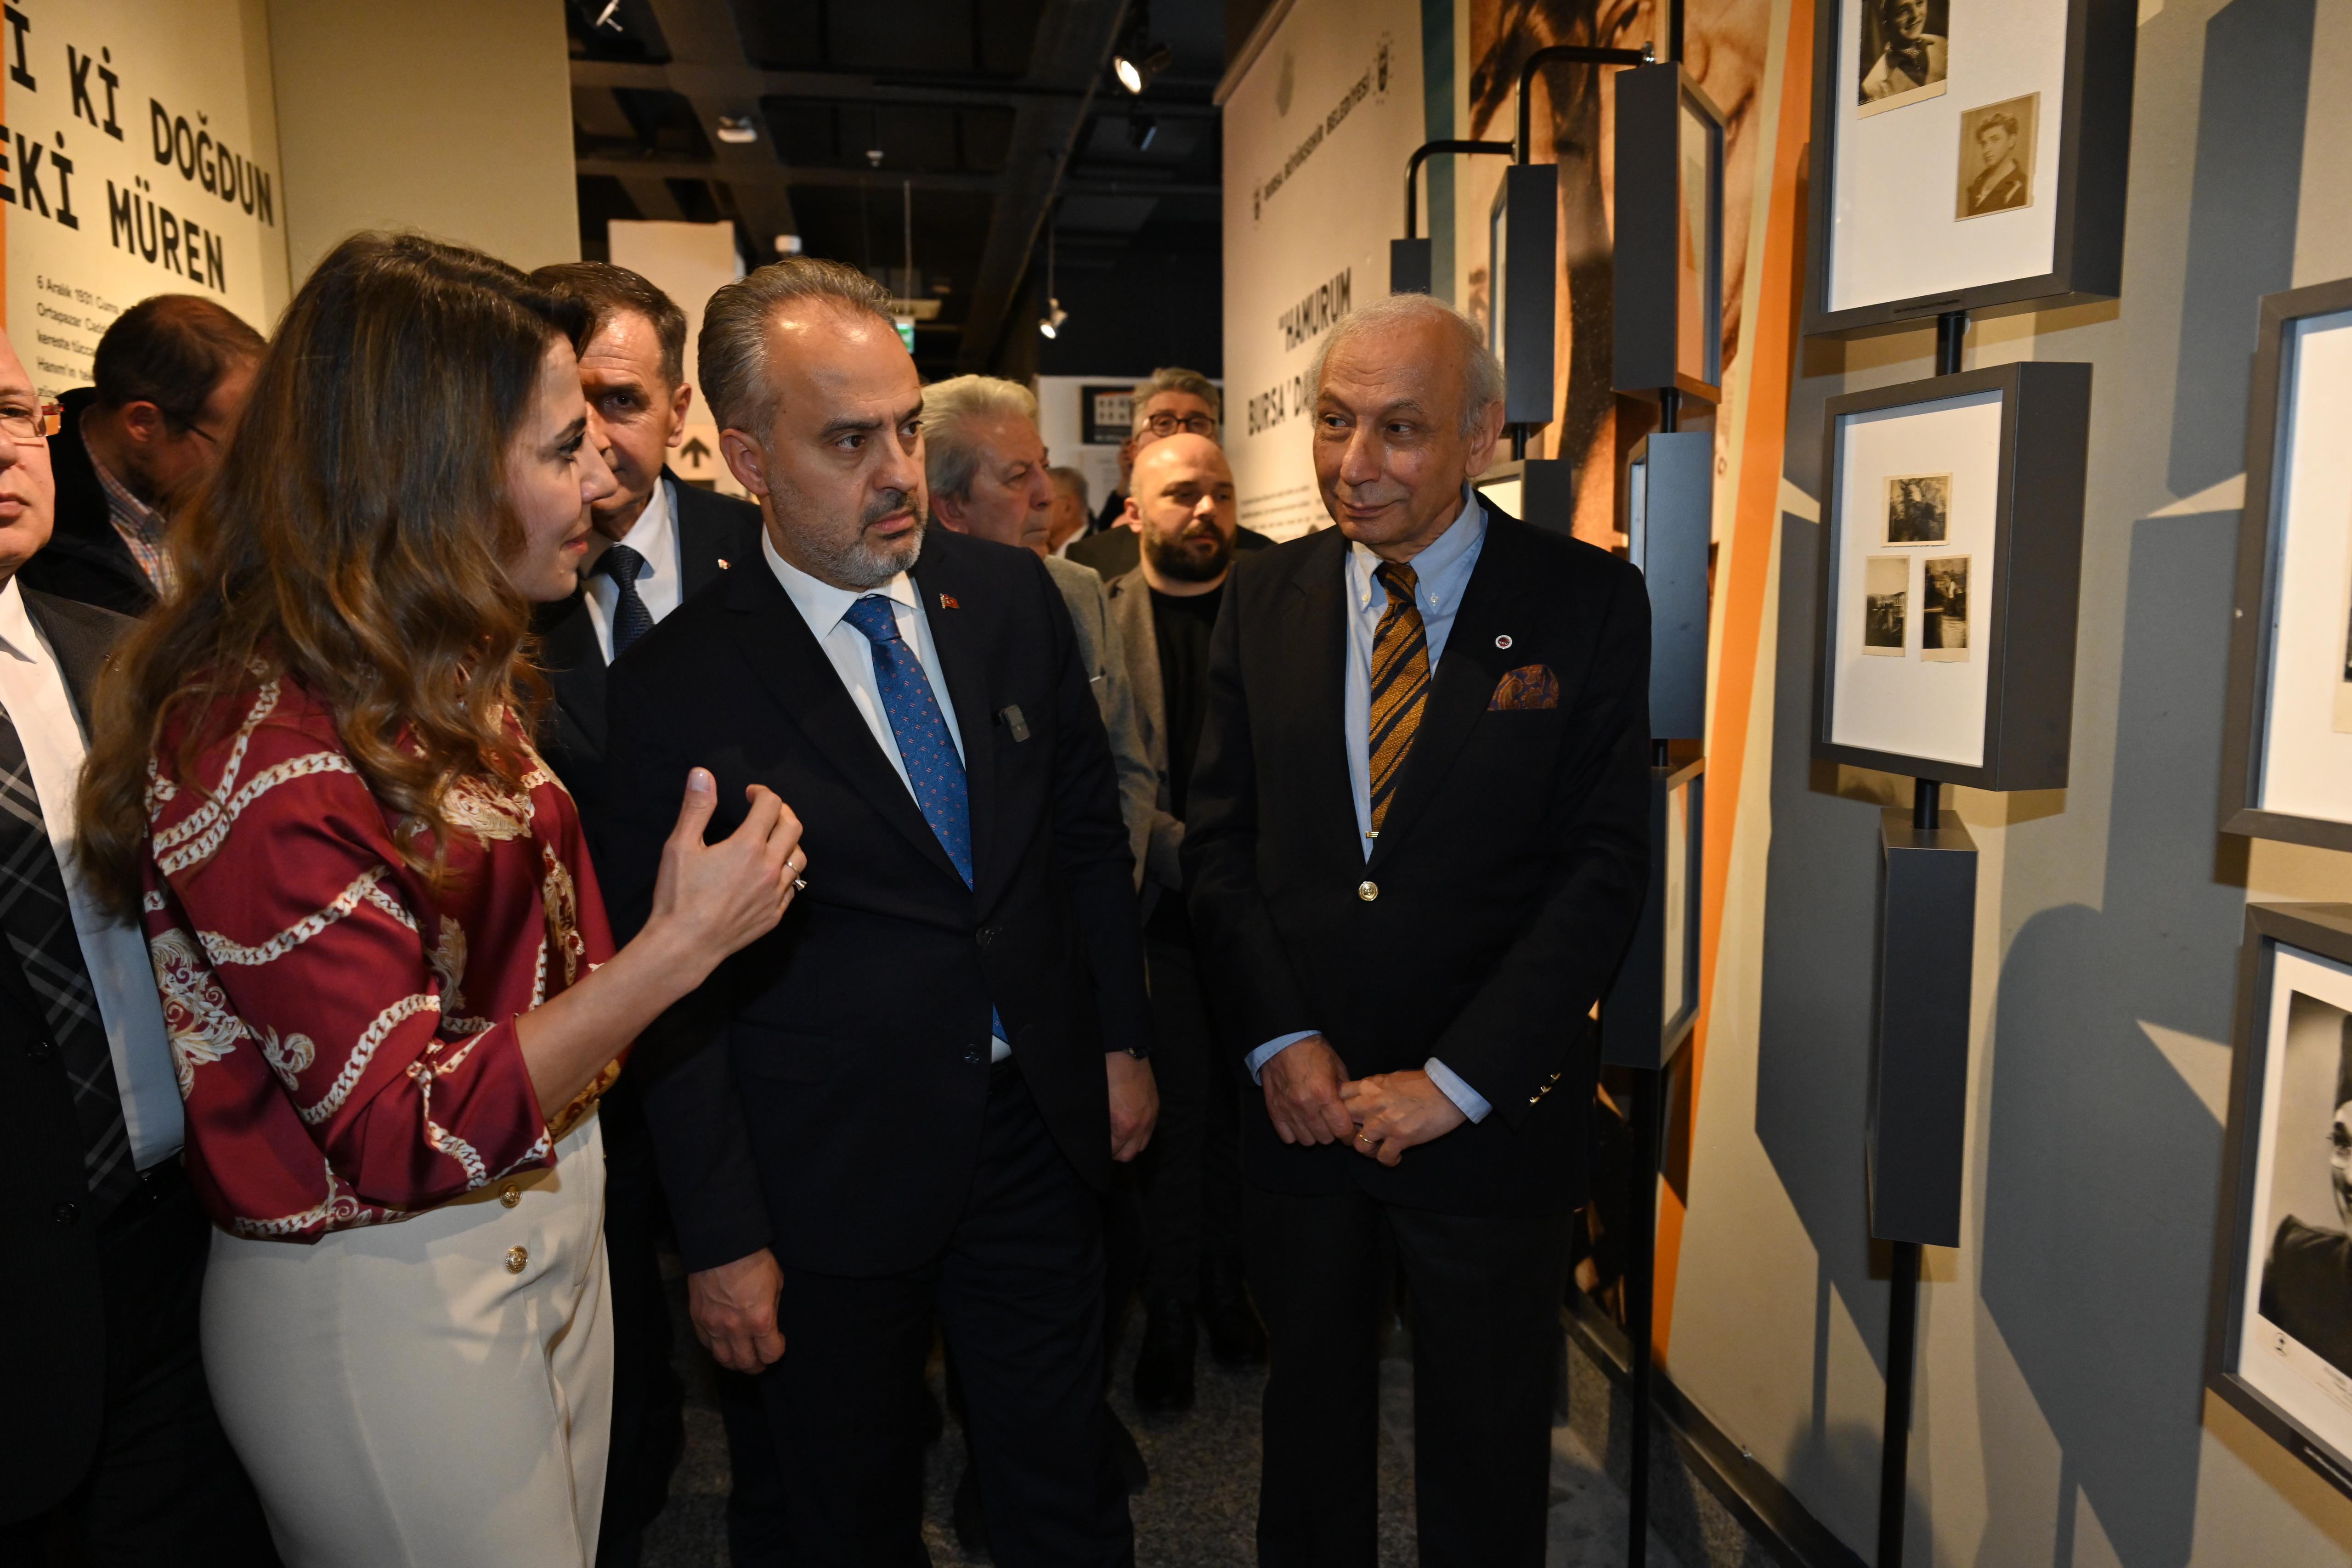 Zeki Müren sergisi, Bursa Kent Müzesi’nde ziyarete açıldı